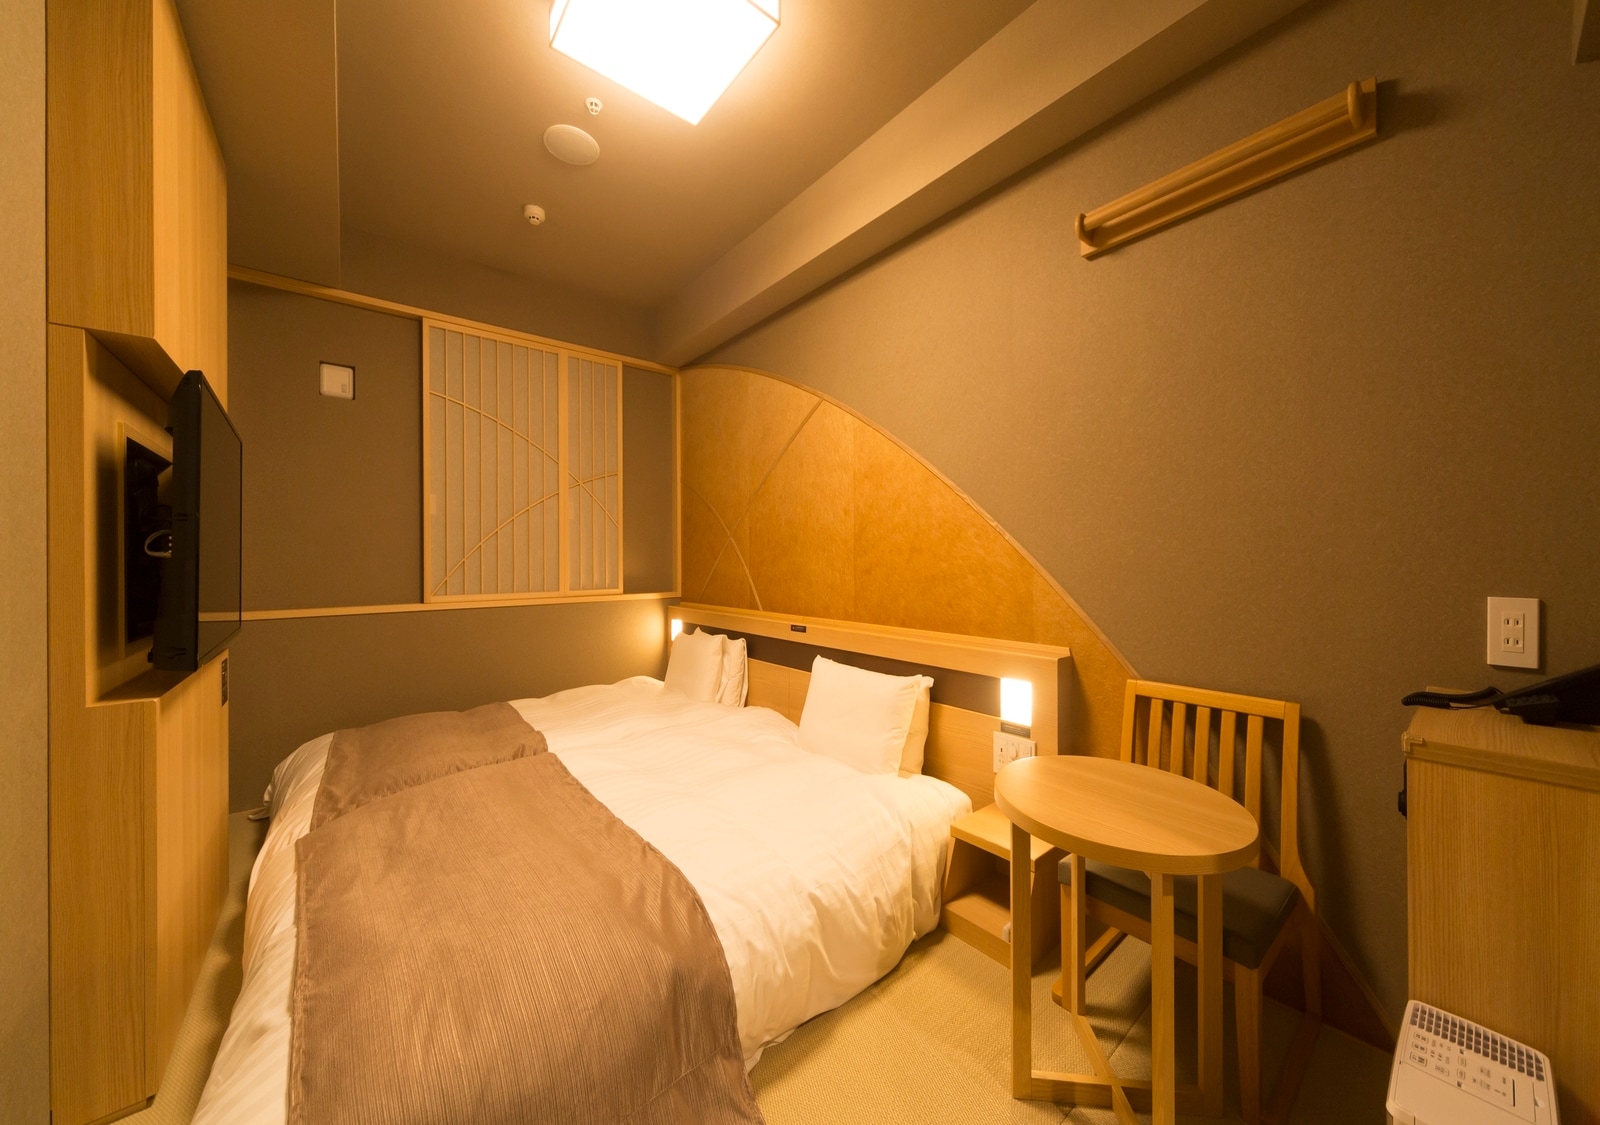 ◆ ห้องเตียงแฝดสไตล์ญี่ปุ่น 17 ตร.ม. ความกว้างเตียง: 120 & ครั้ง; 195 ซม. & ครั้ง; 2